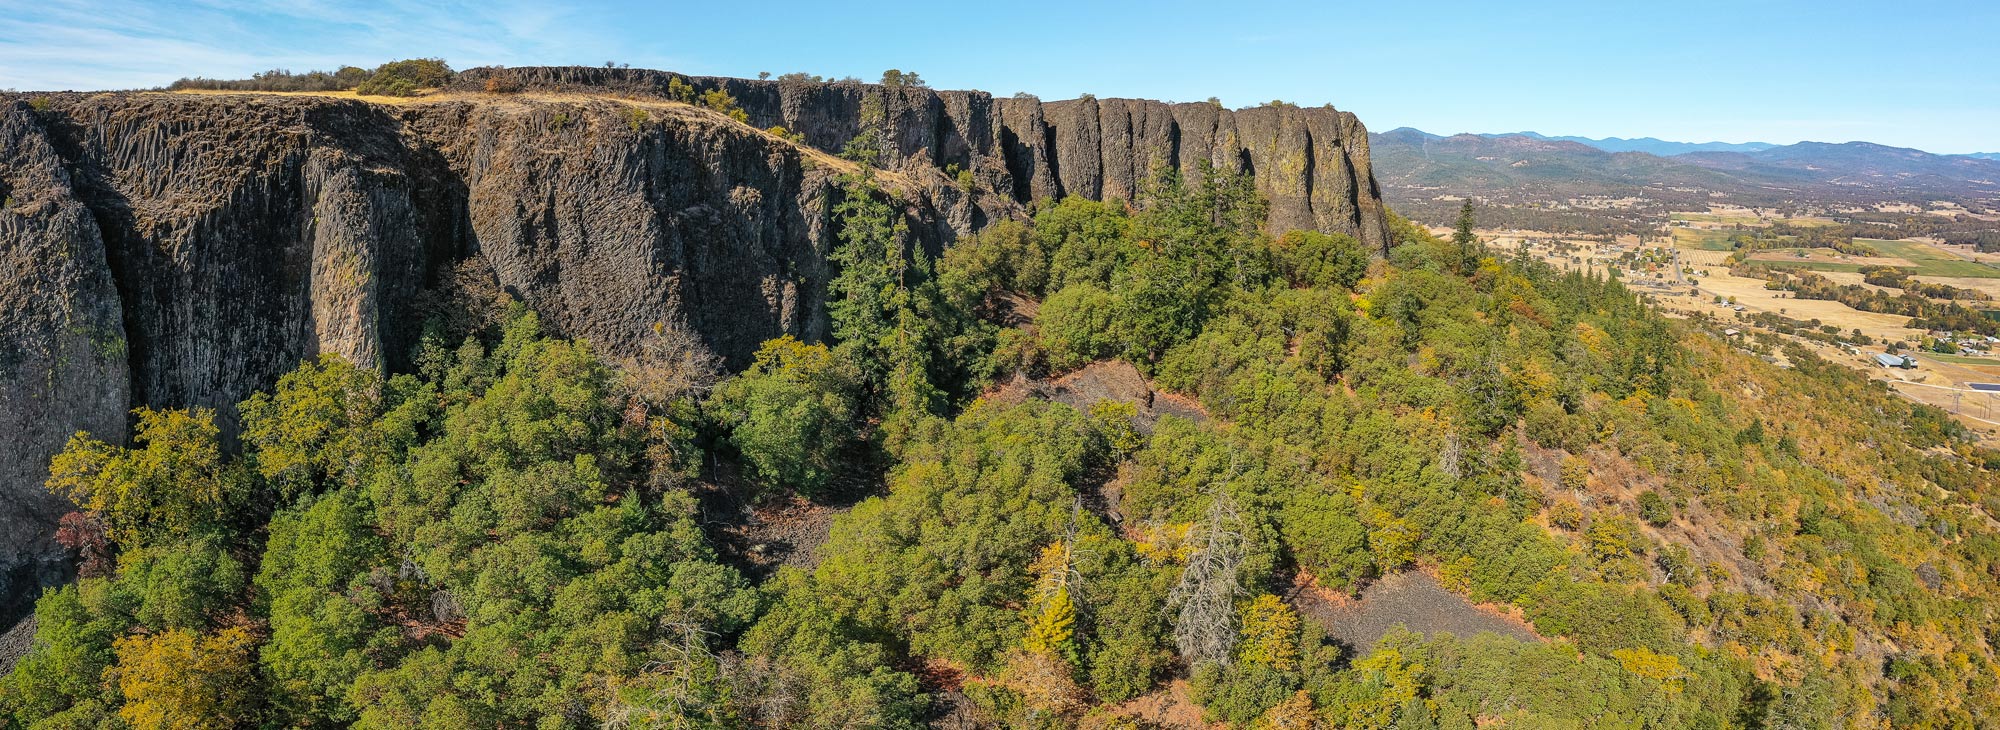 How To Hike Oregon S Table Rocks